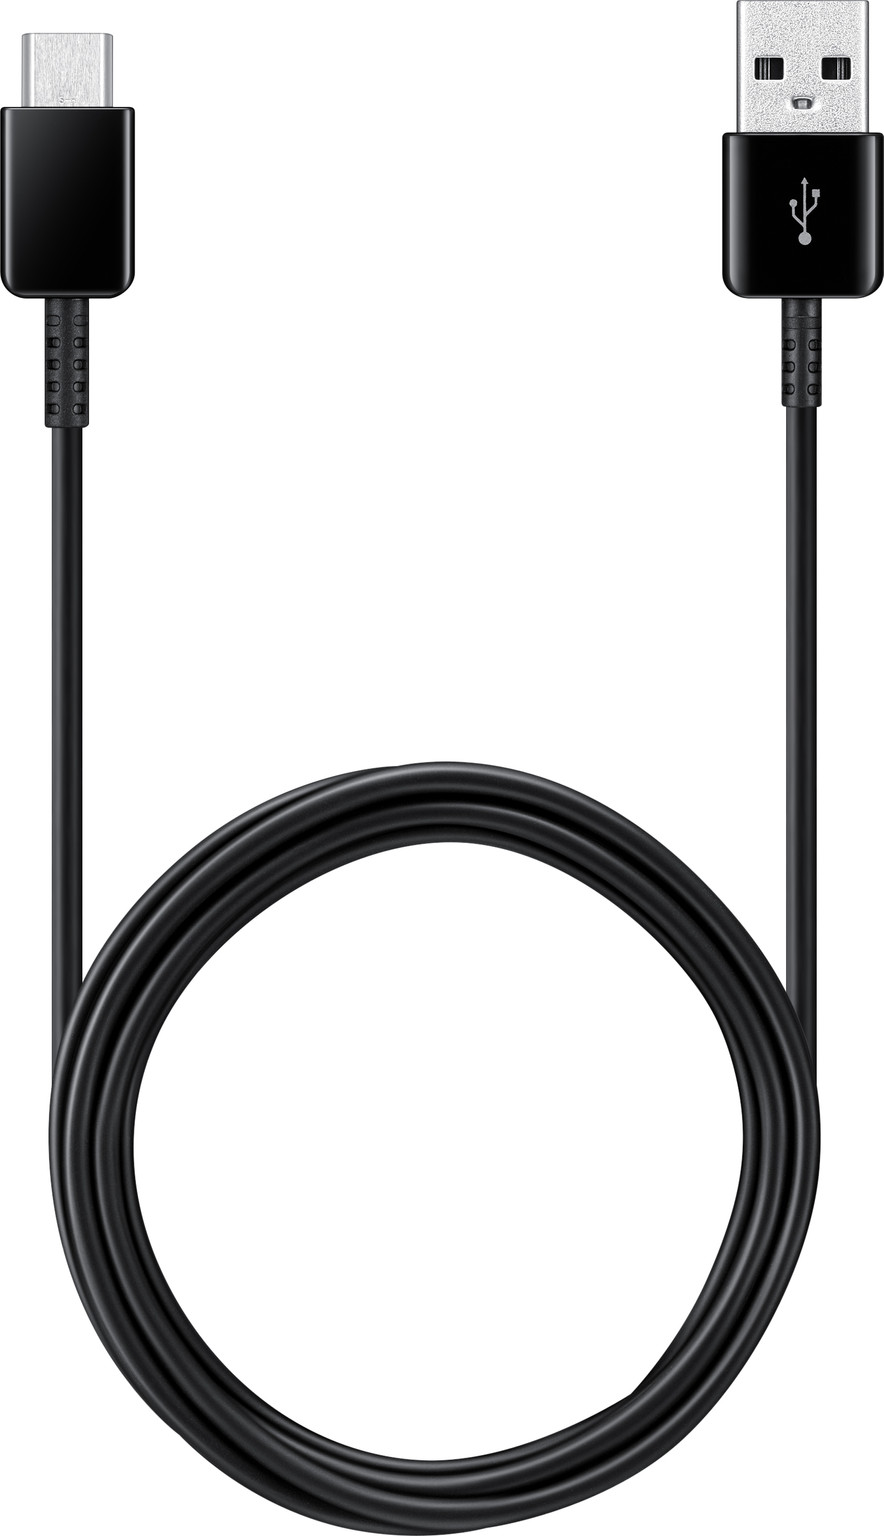 niet fluiten Preventie Samsung Galaxy Tab S6 Oplaadkabel USB C 2 meter zwart - Gsm-Oplader.nl